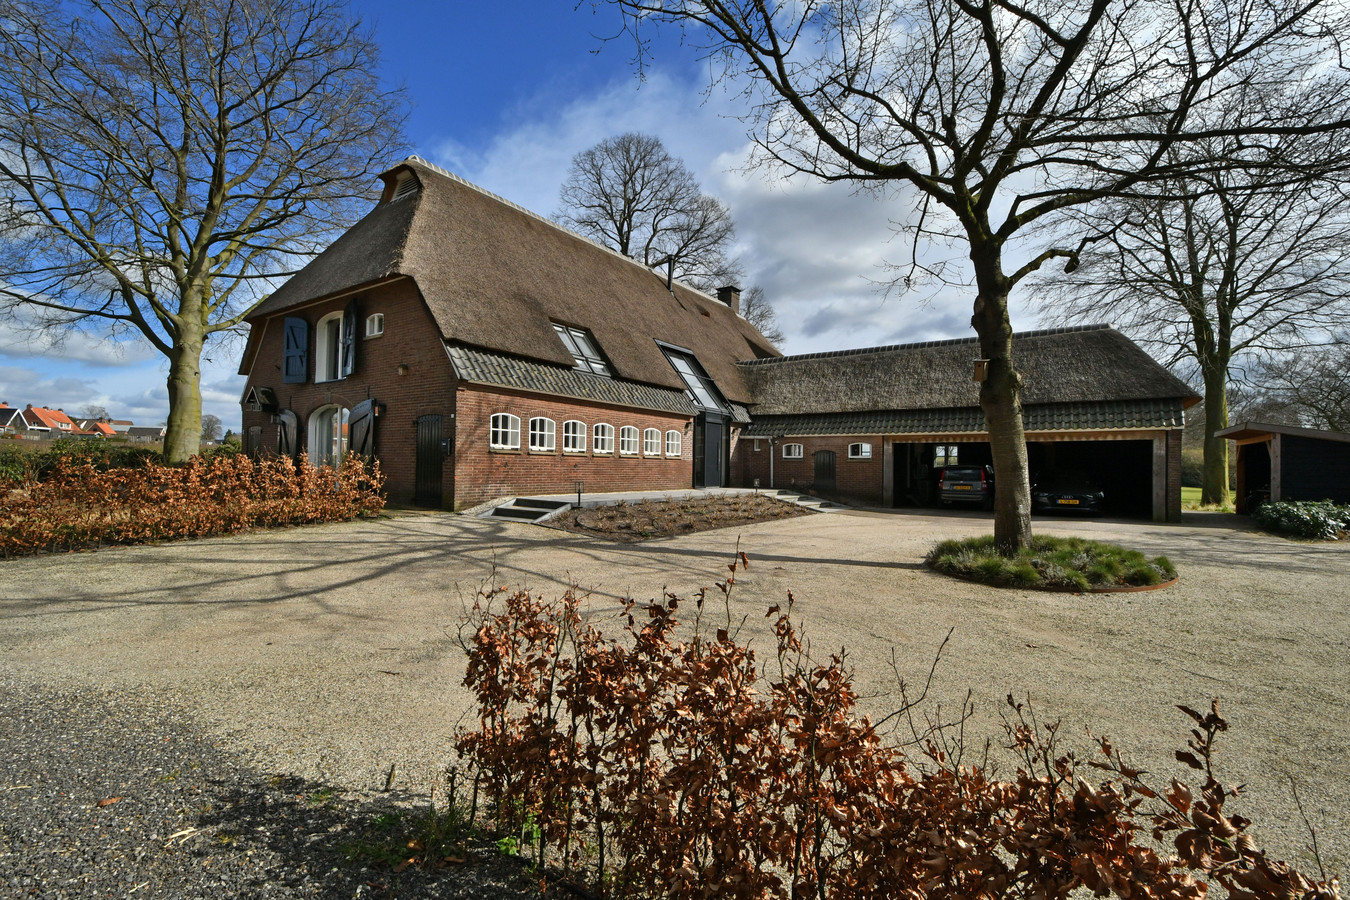 Droomboerderij van Renate en Harry ligt aan rand van 'Dynasty-gevoel als de trap af komen' | | tubantia.nl